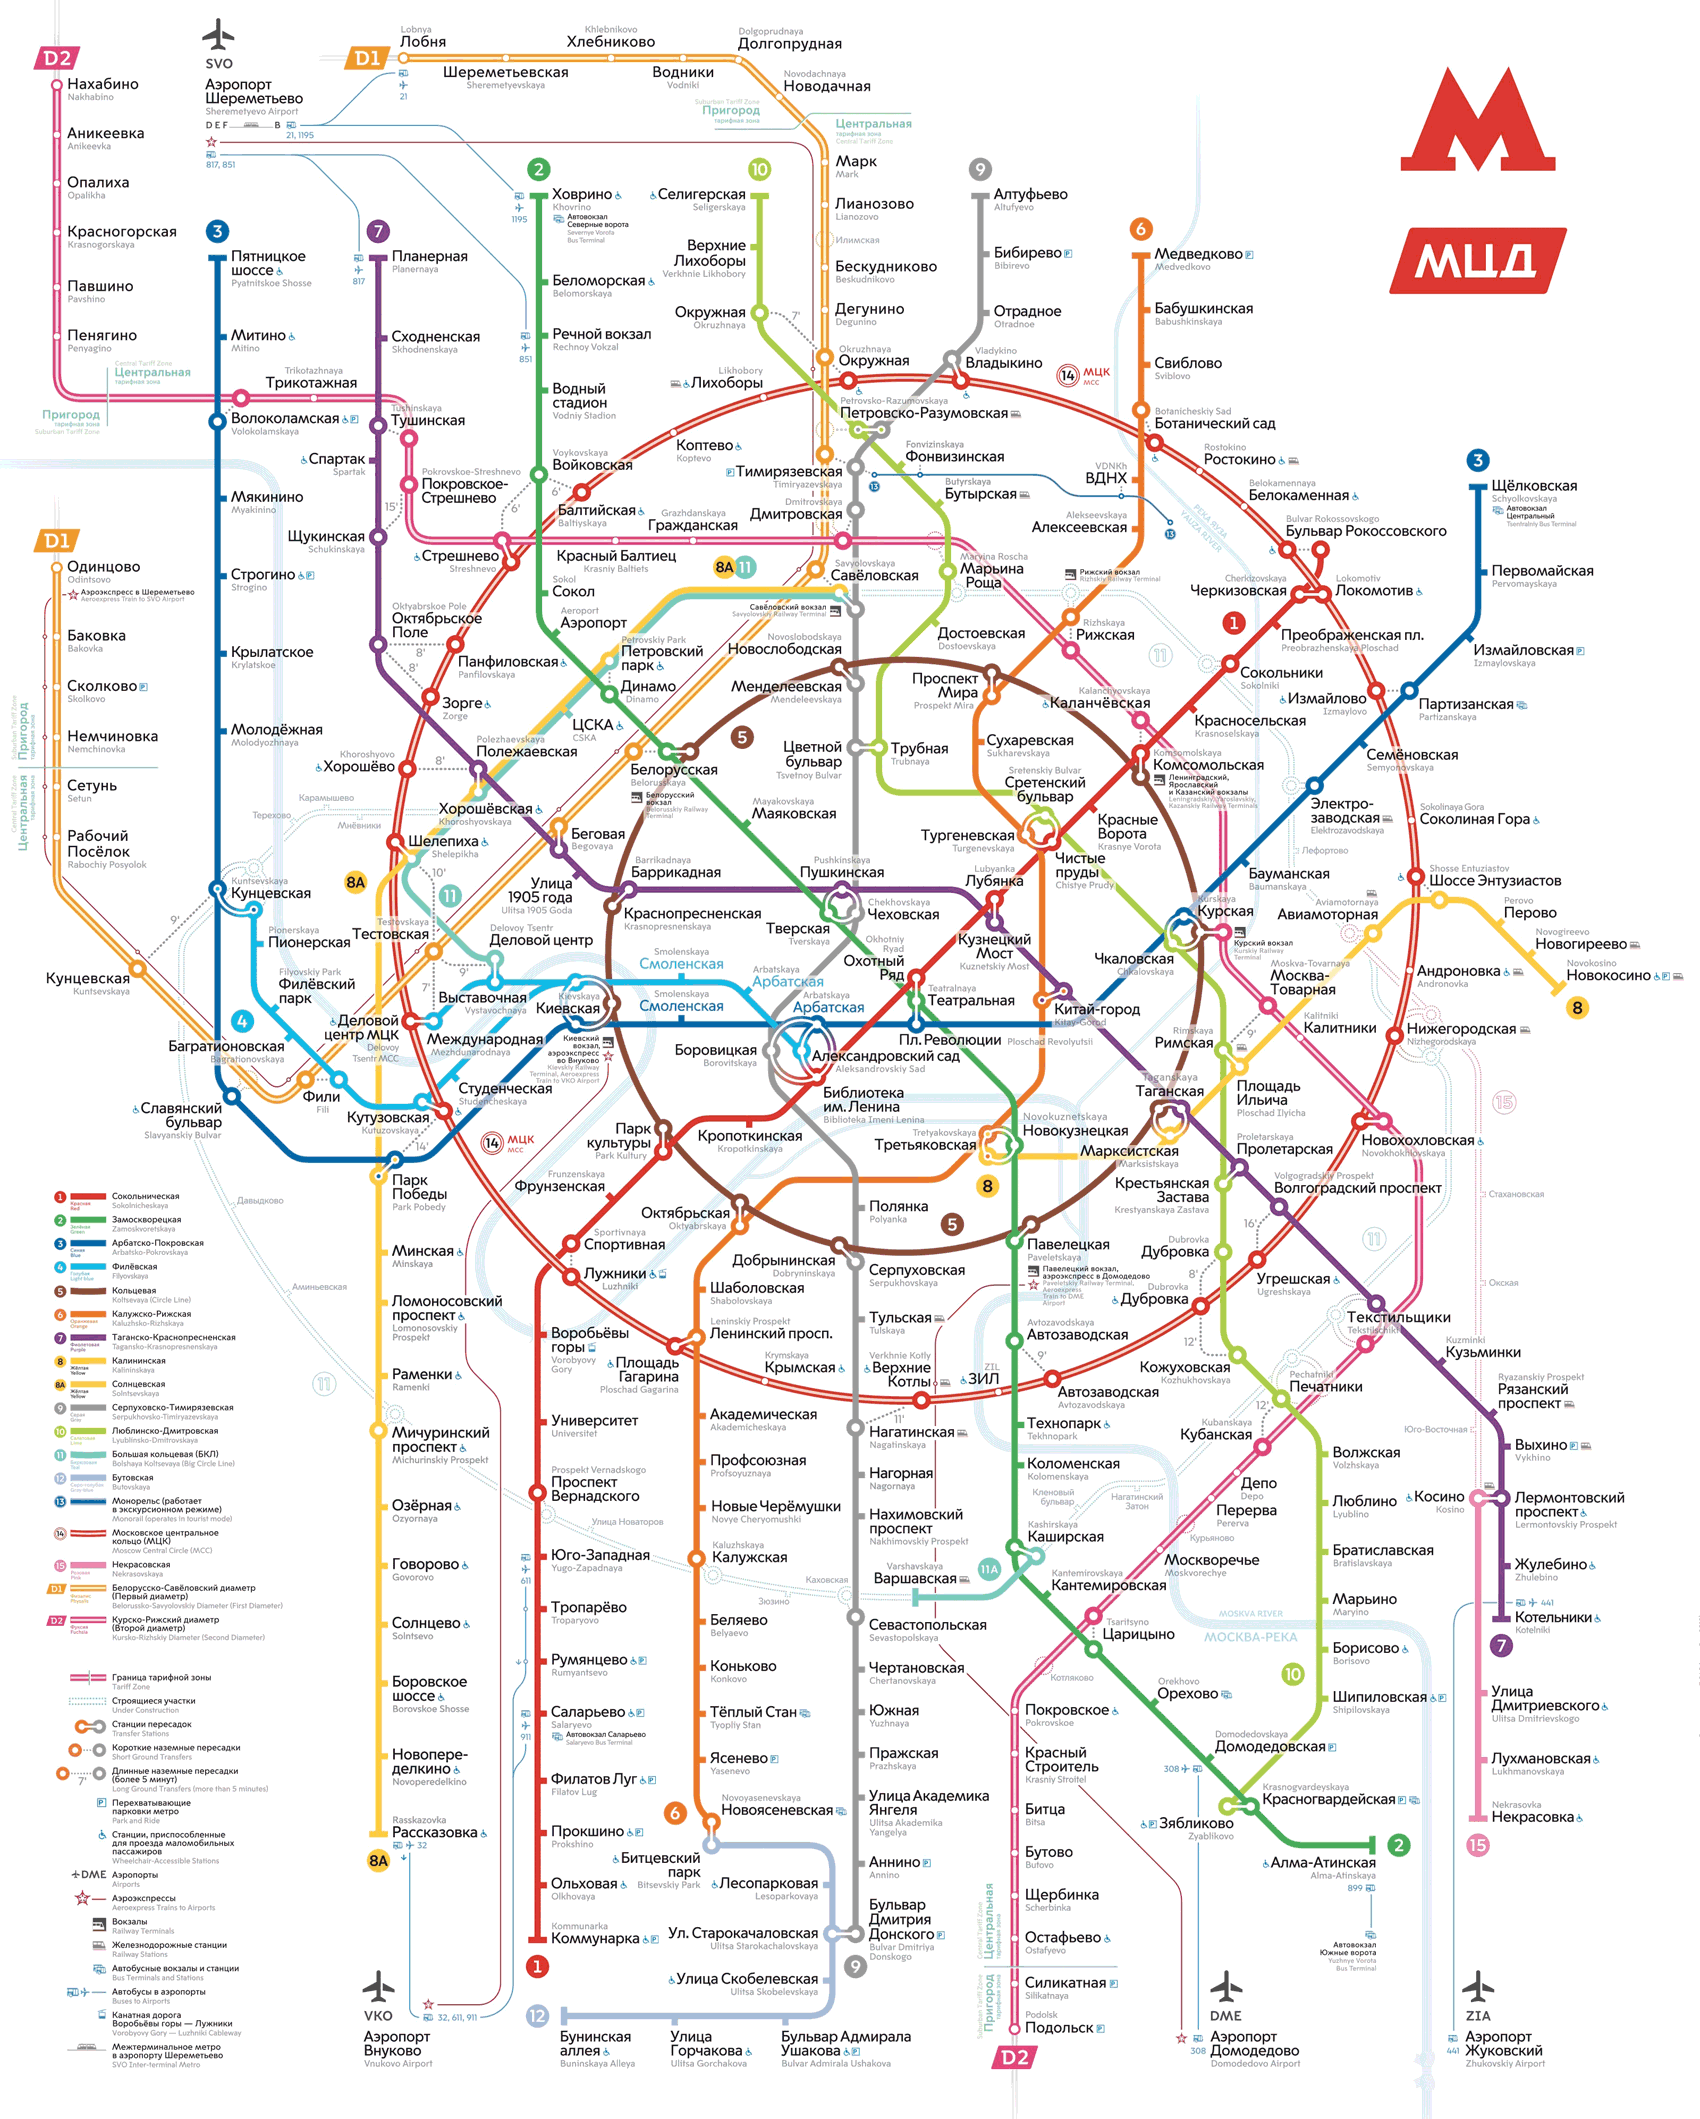 Maskva — Metro — Maps